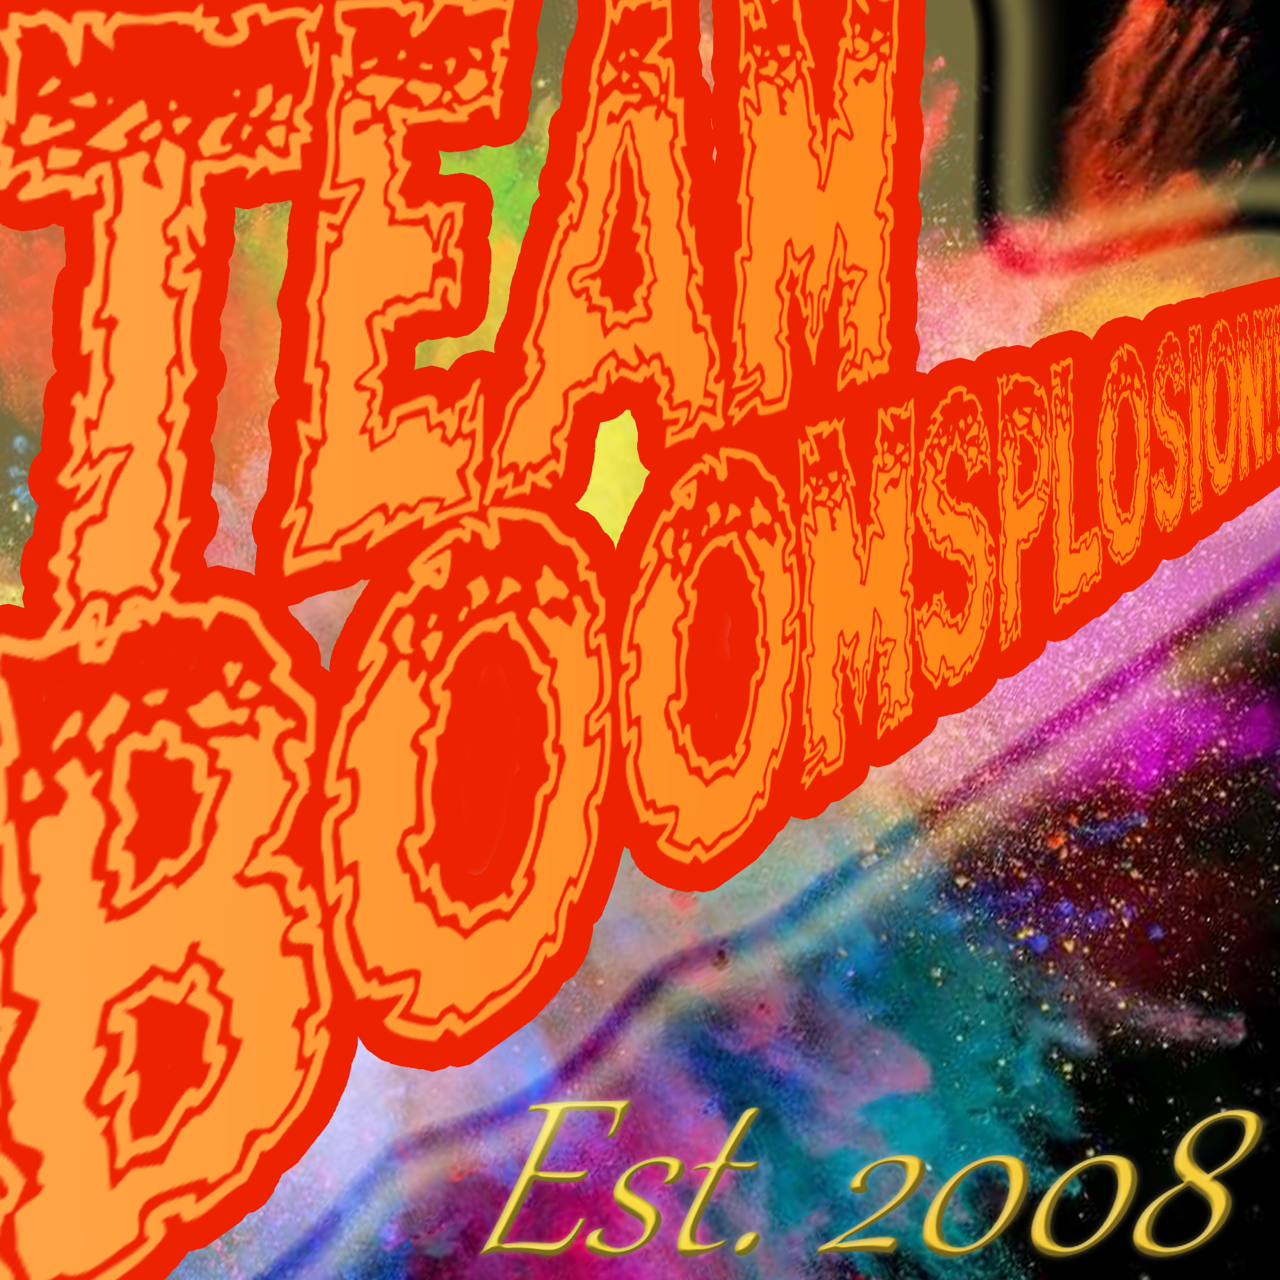 Team Boomsplosion